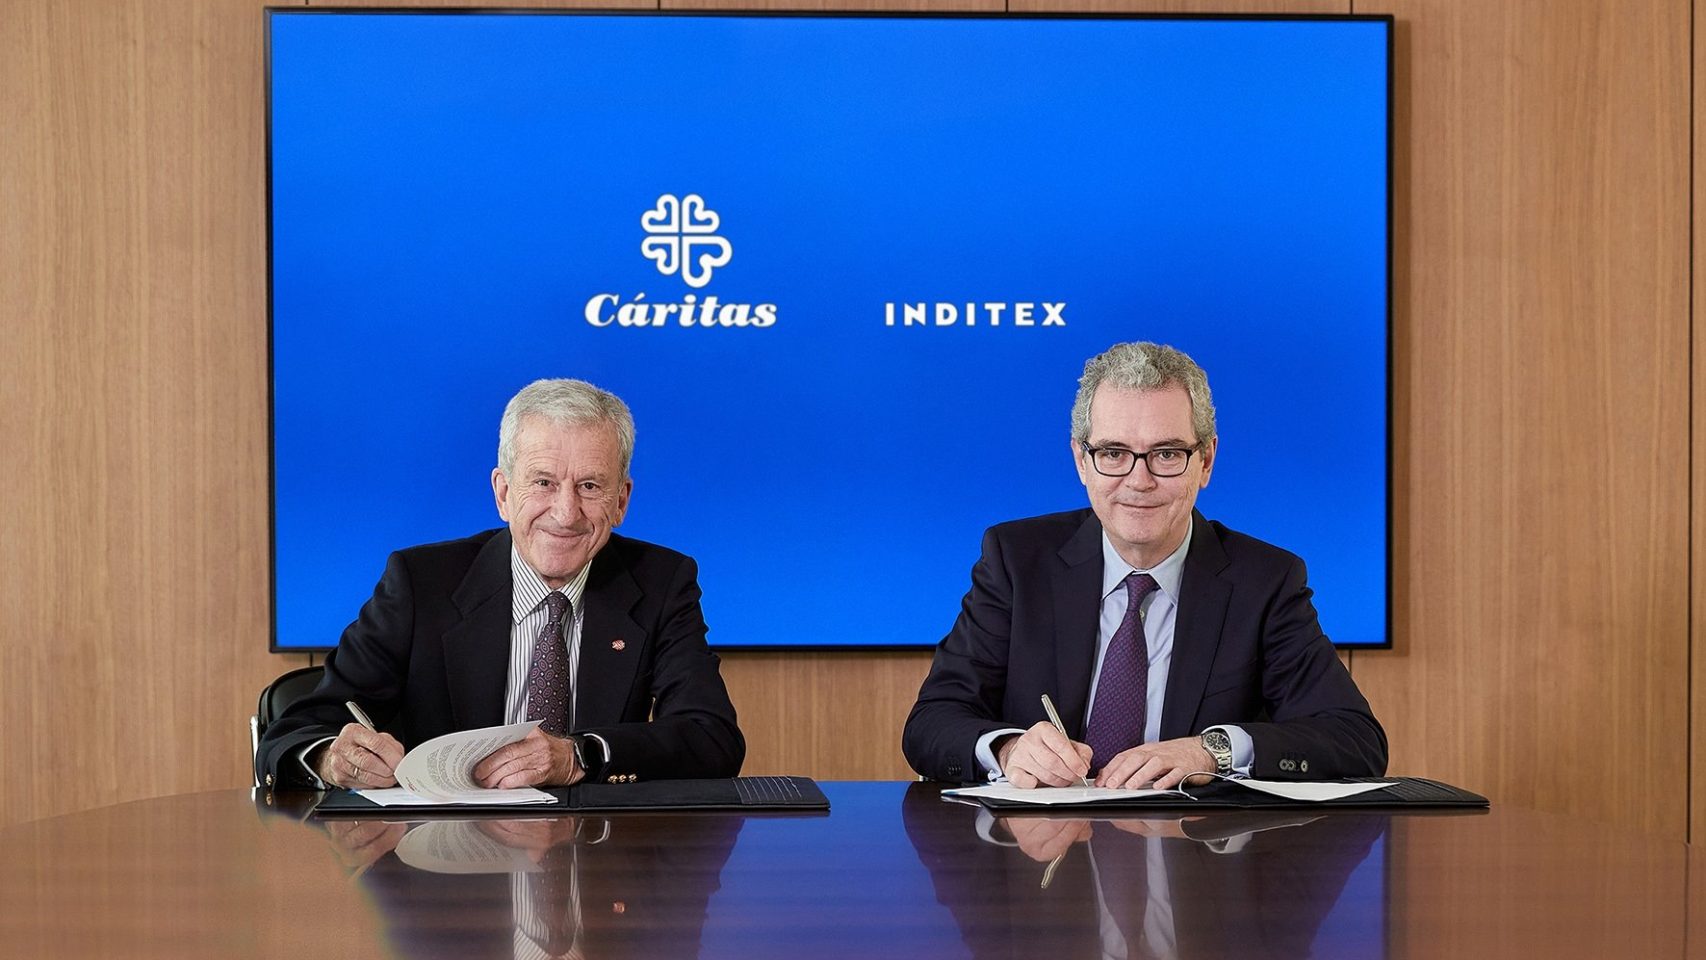 Acuerdo entre Cáritas e Inditex firmado el 14 de enero en la sede de Inditex en Arteixo (A Coruña) entre los presidentes de ambas organizaciones,